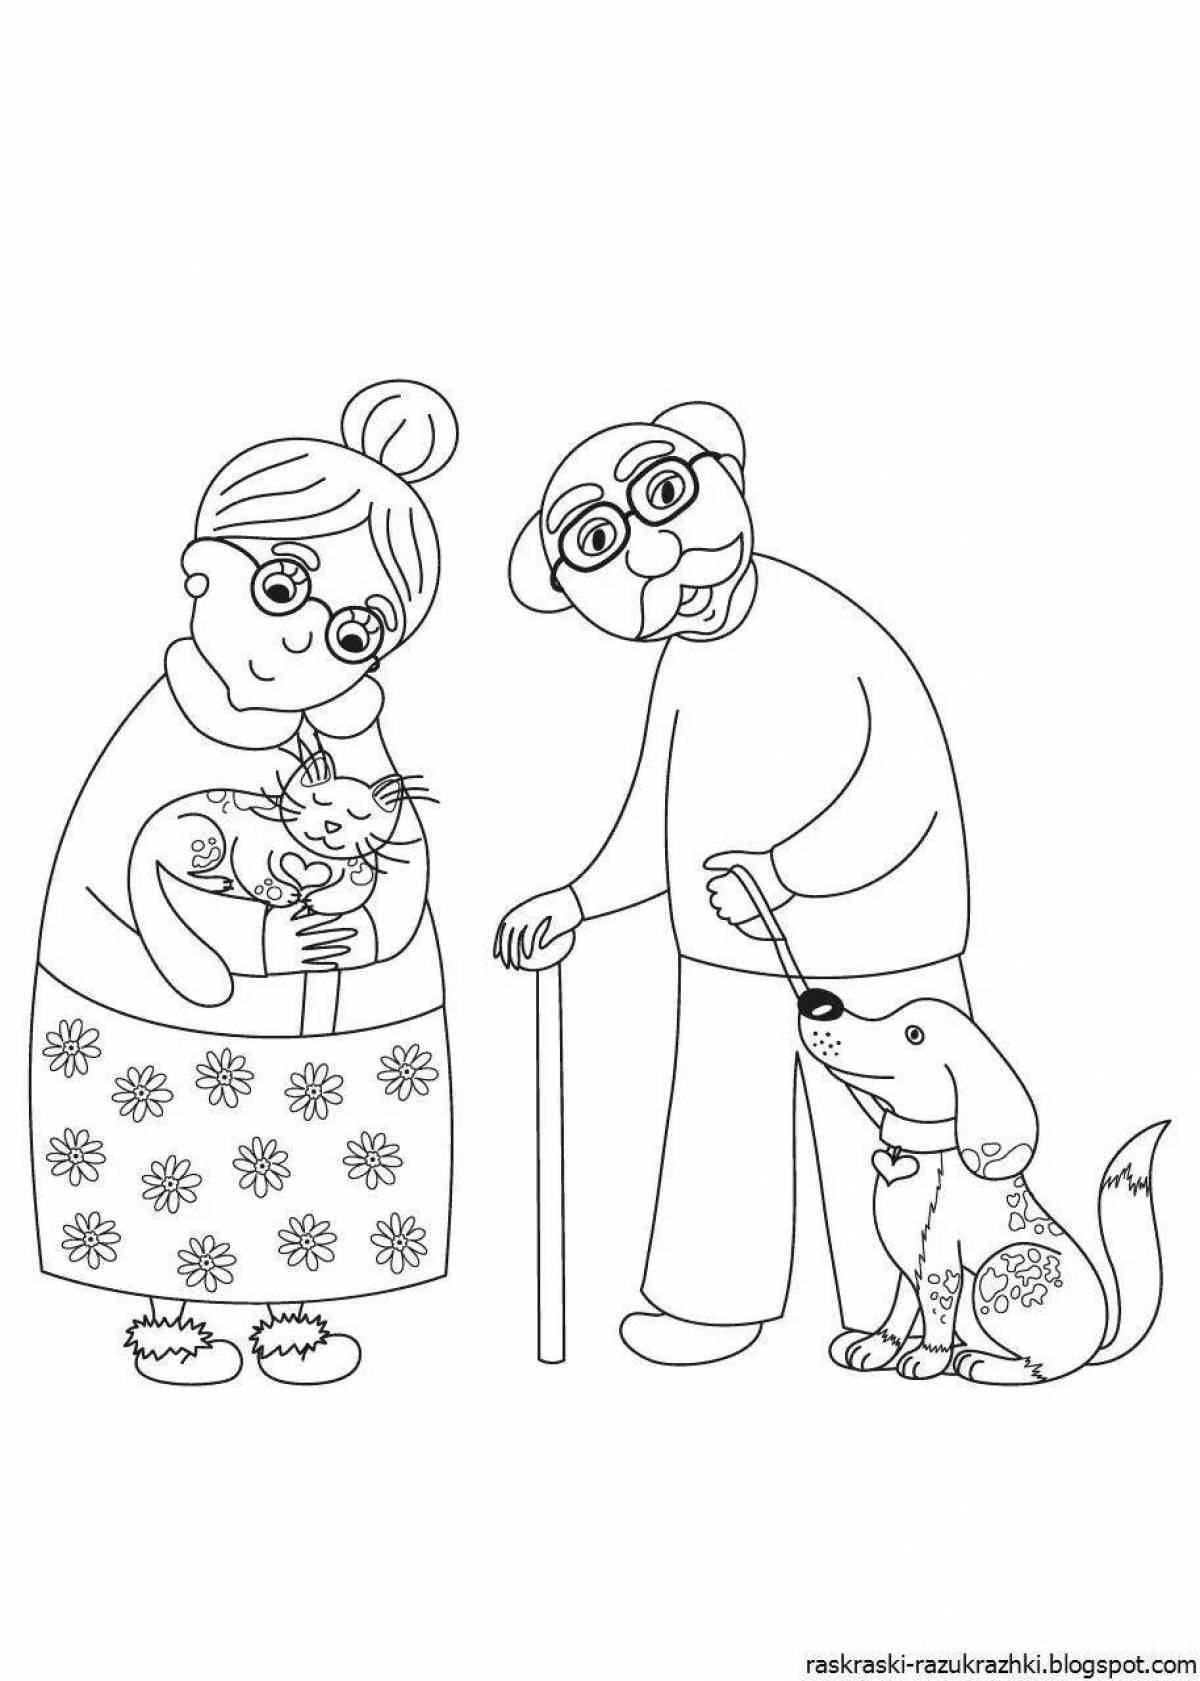 Раскраска бабушка и дедушка для детей